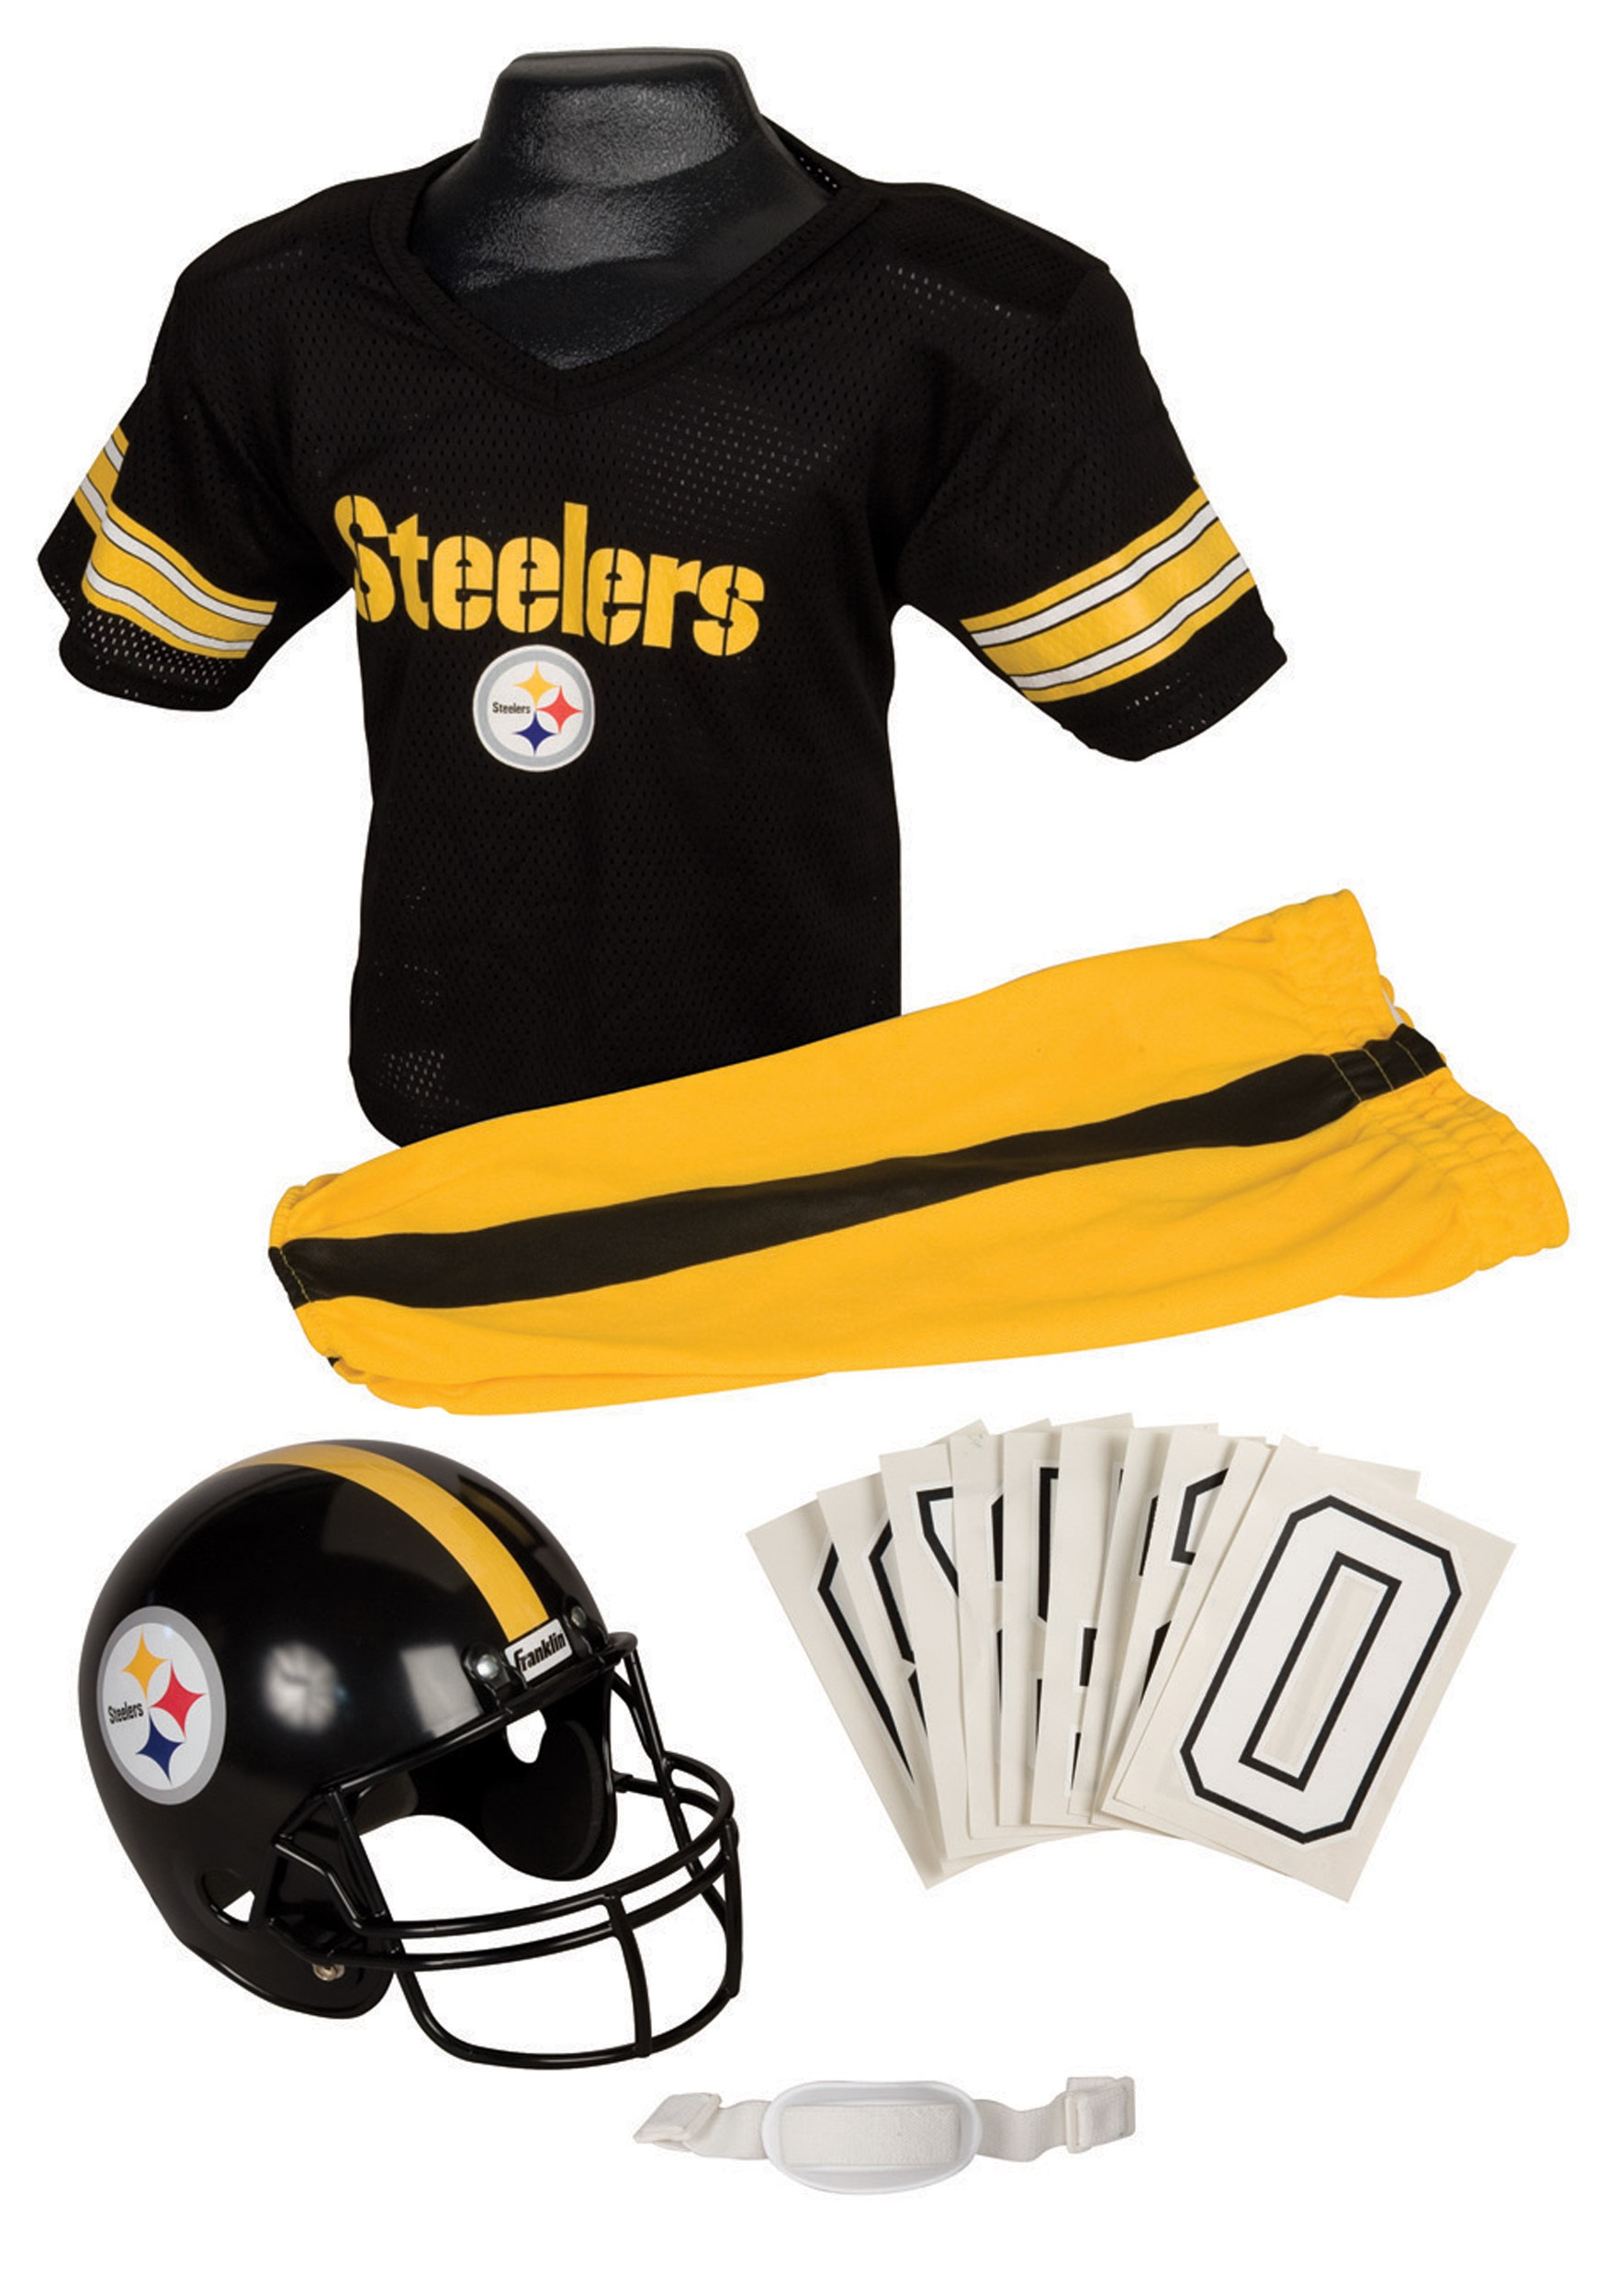 Kid's NFL Steelers Uniform Costume